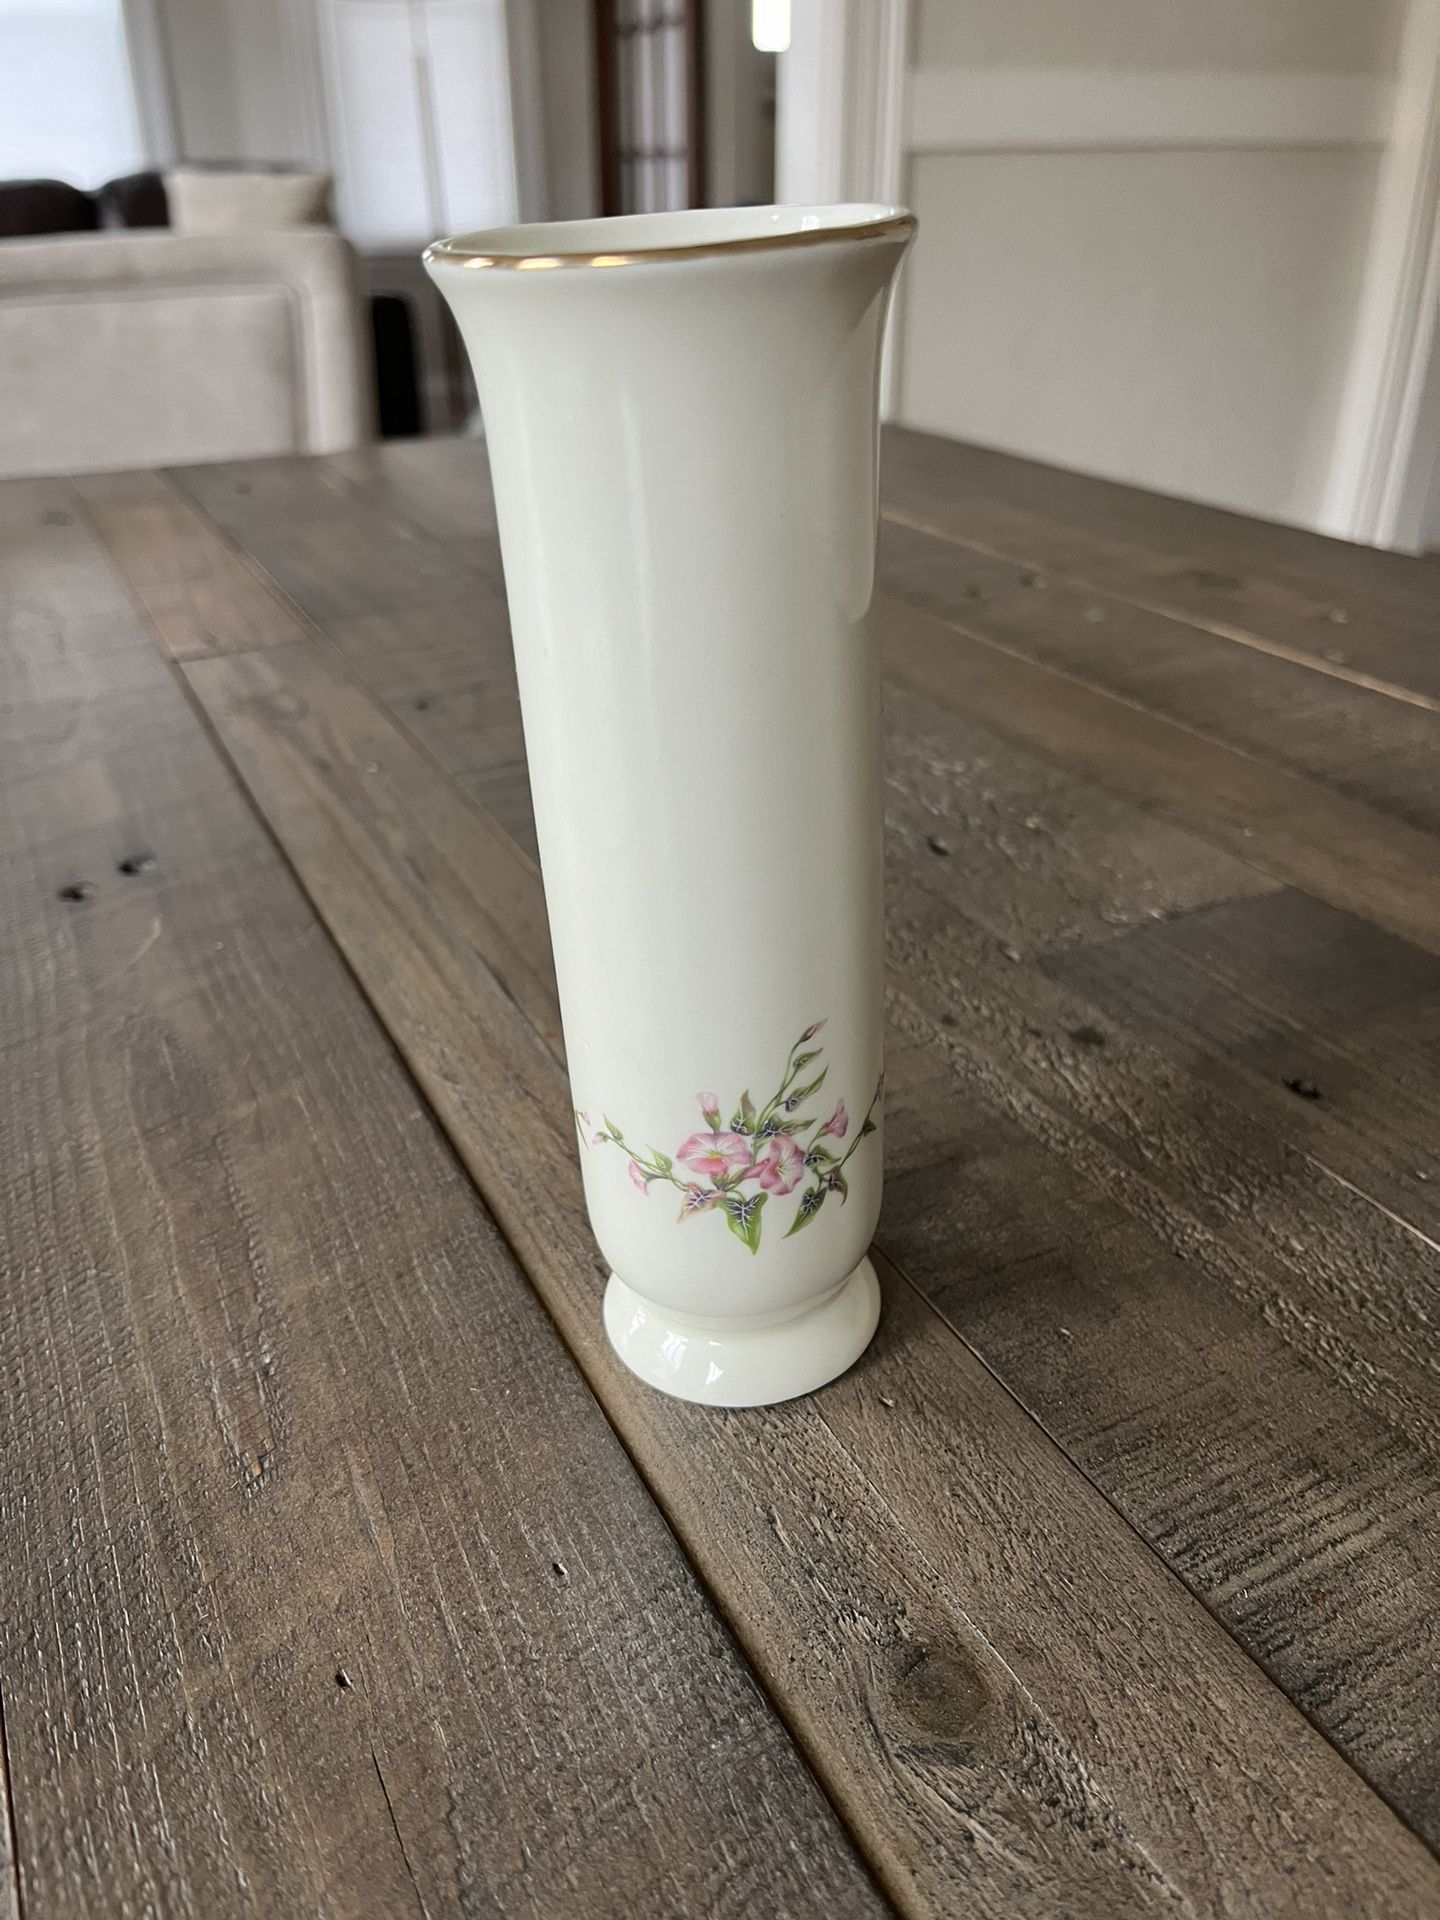 Vintage Russ Berrie Porcelain Bud Vase Pink Morning Glory Gold Trim